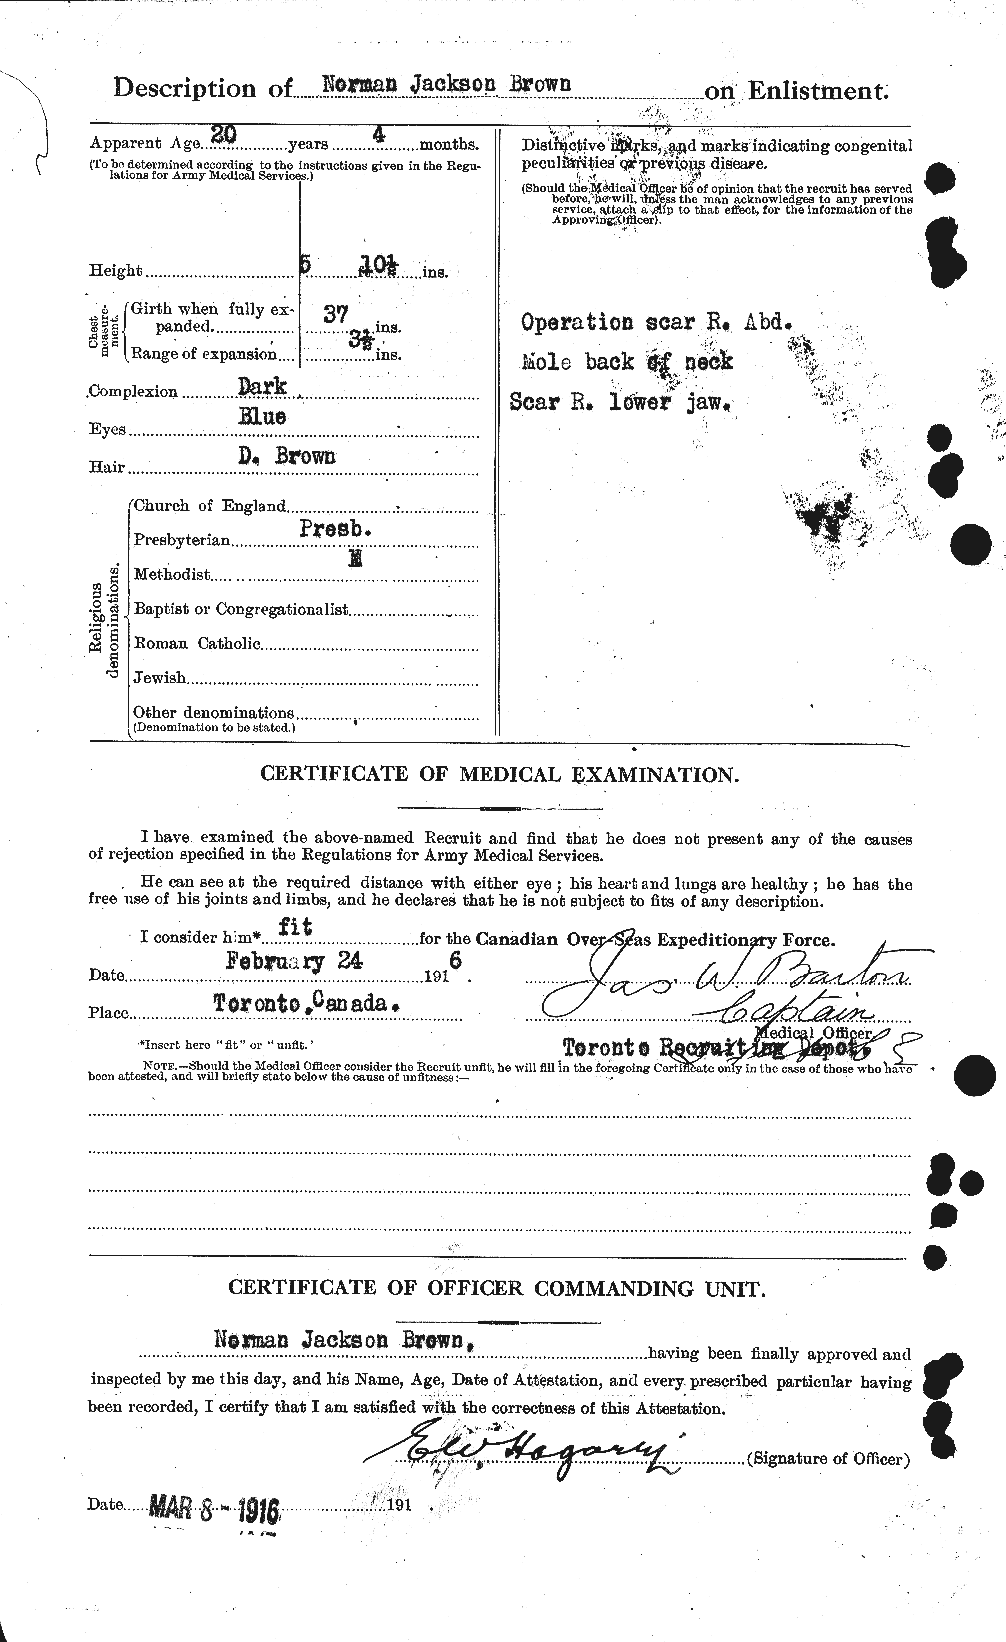 Dossiers du Personnel de la Première Guerre mondiale - CEC 267112b